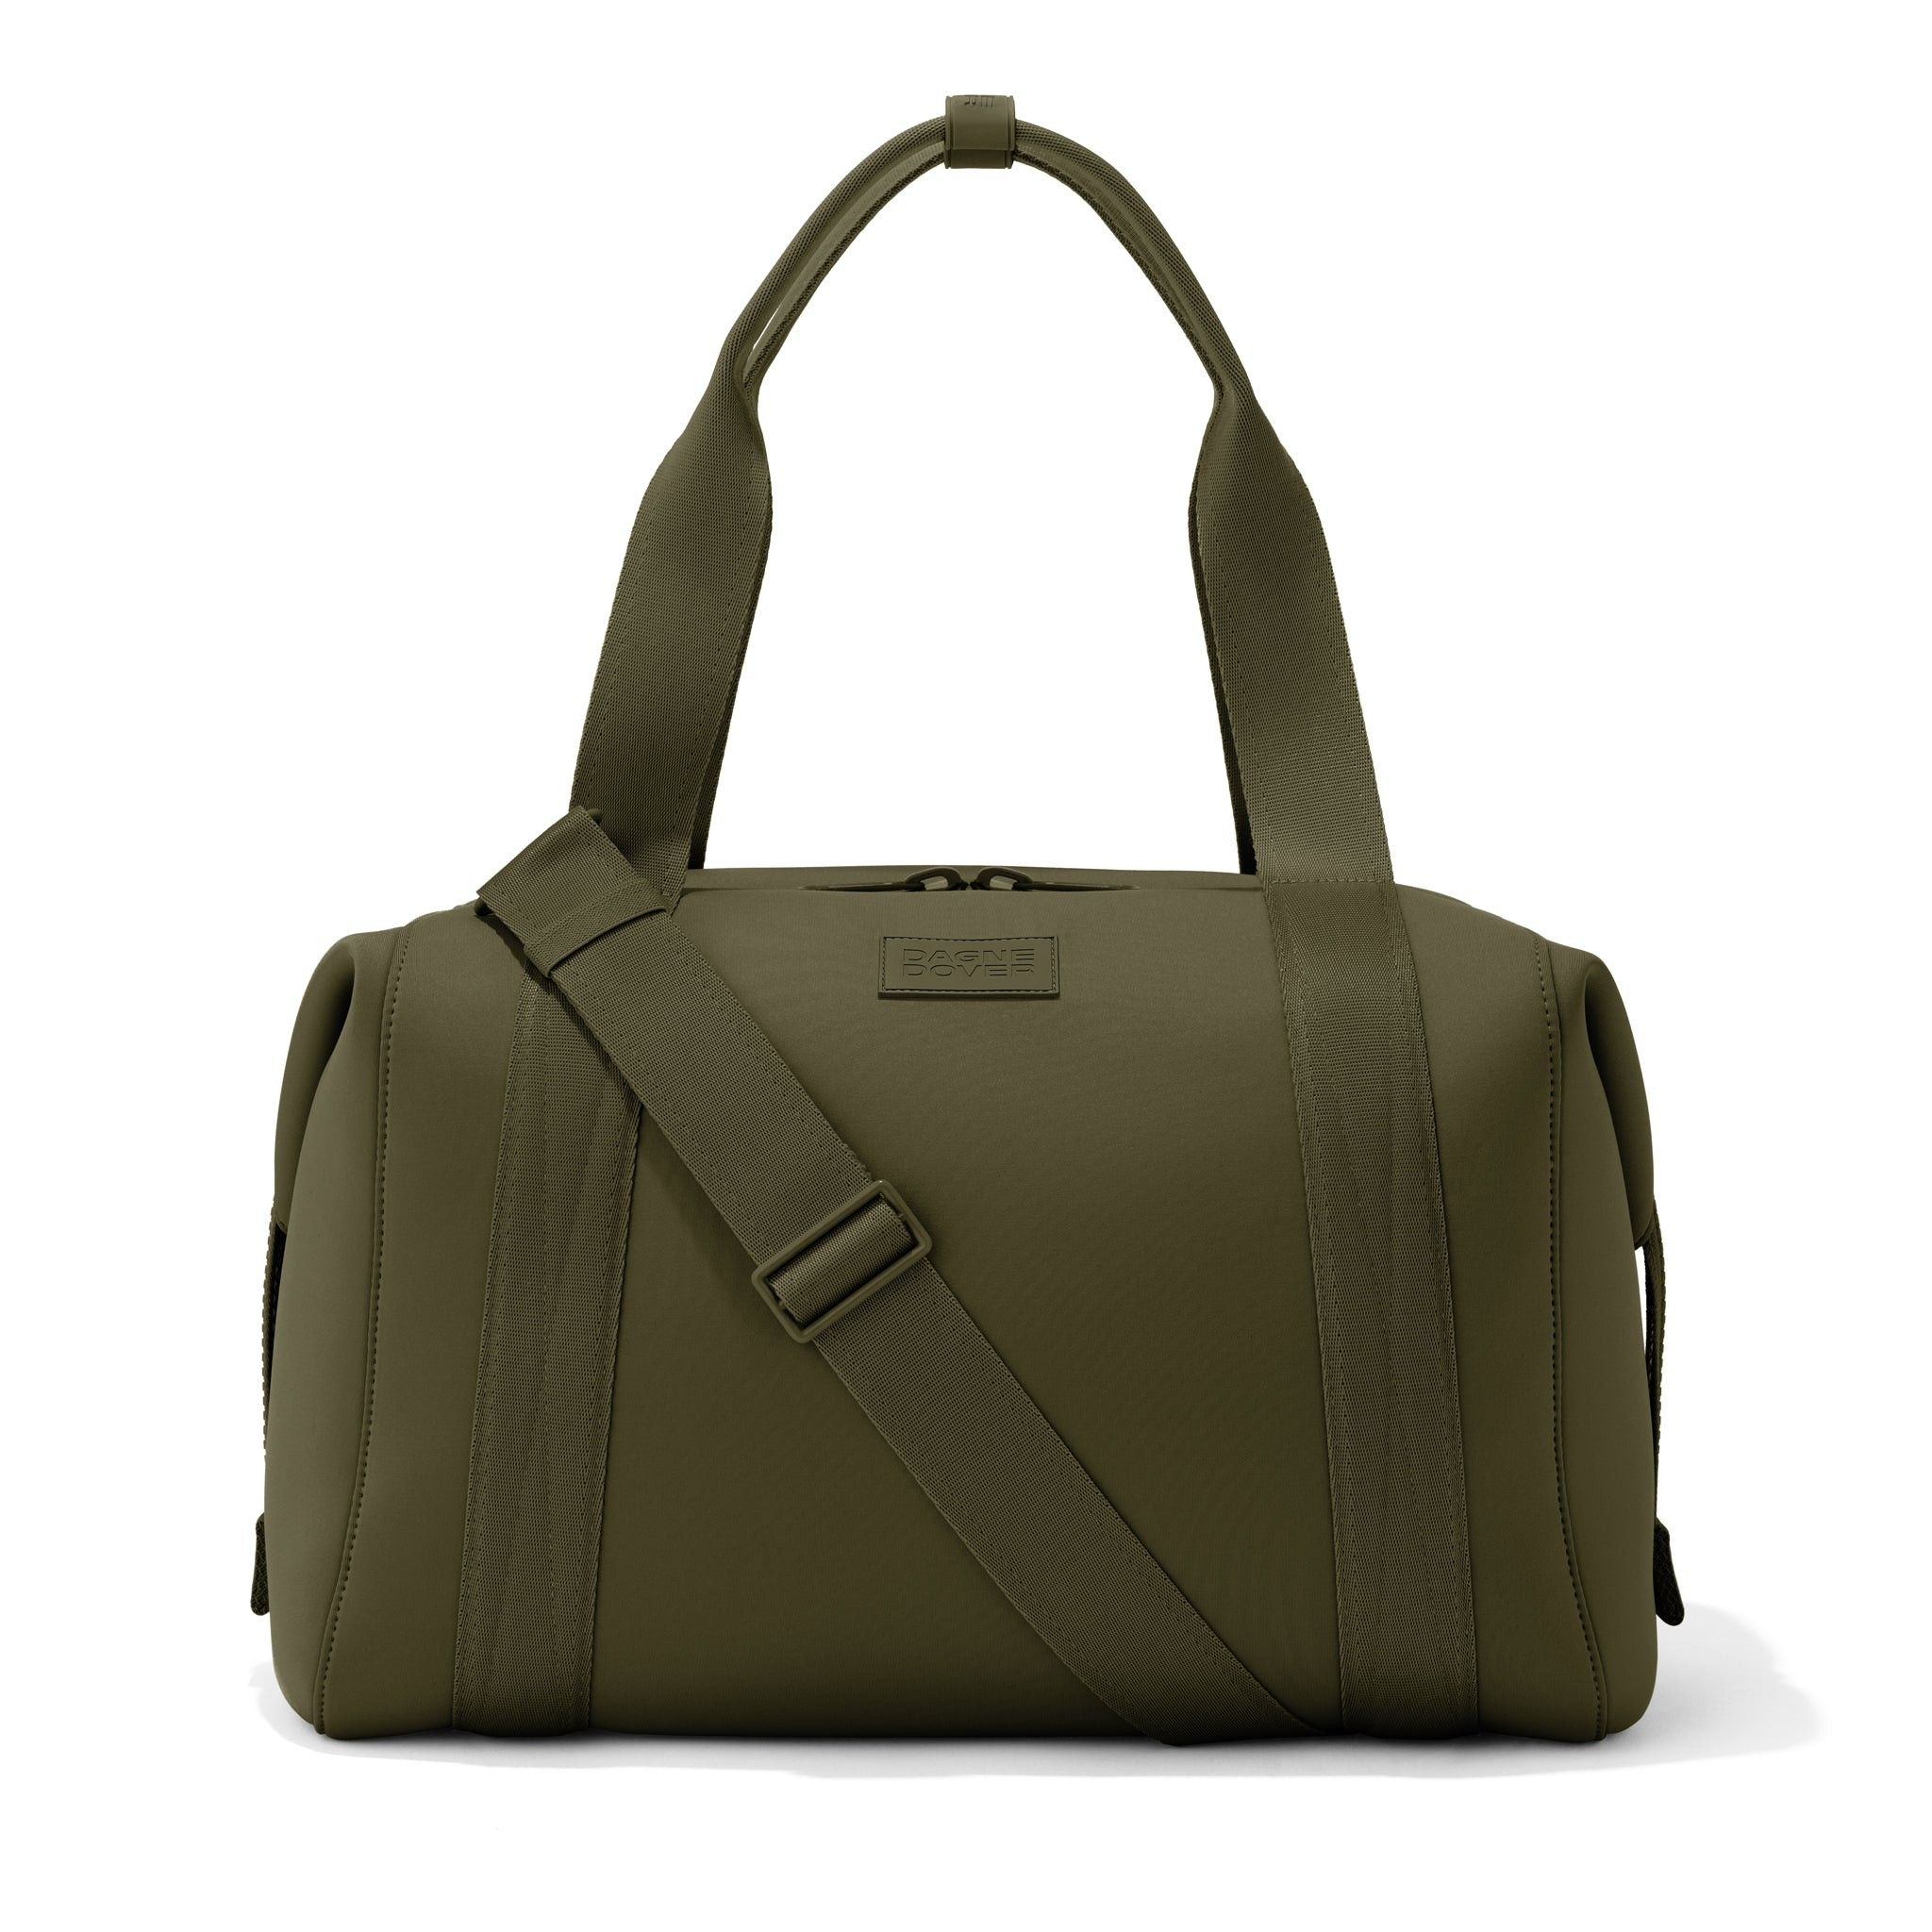 Landon Carryall Bag Travel Bag | Dagne Dover